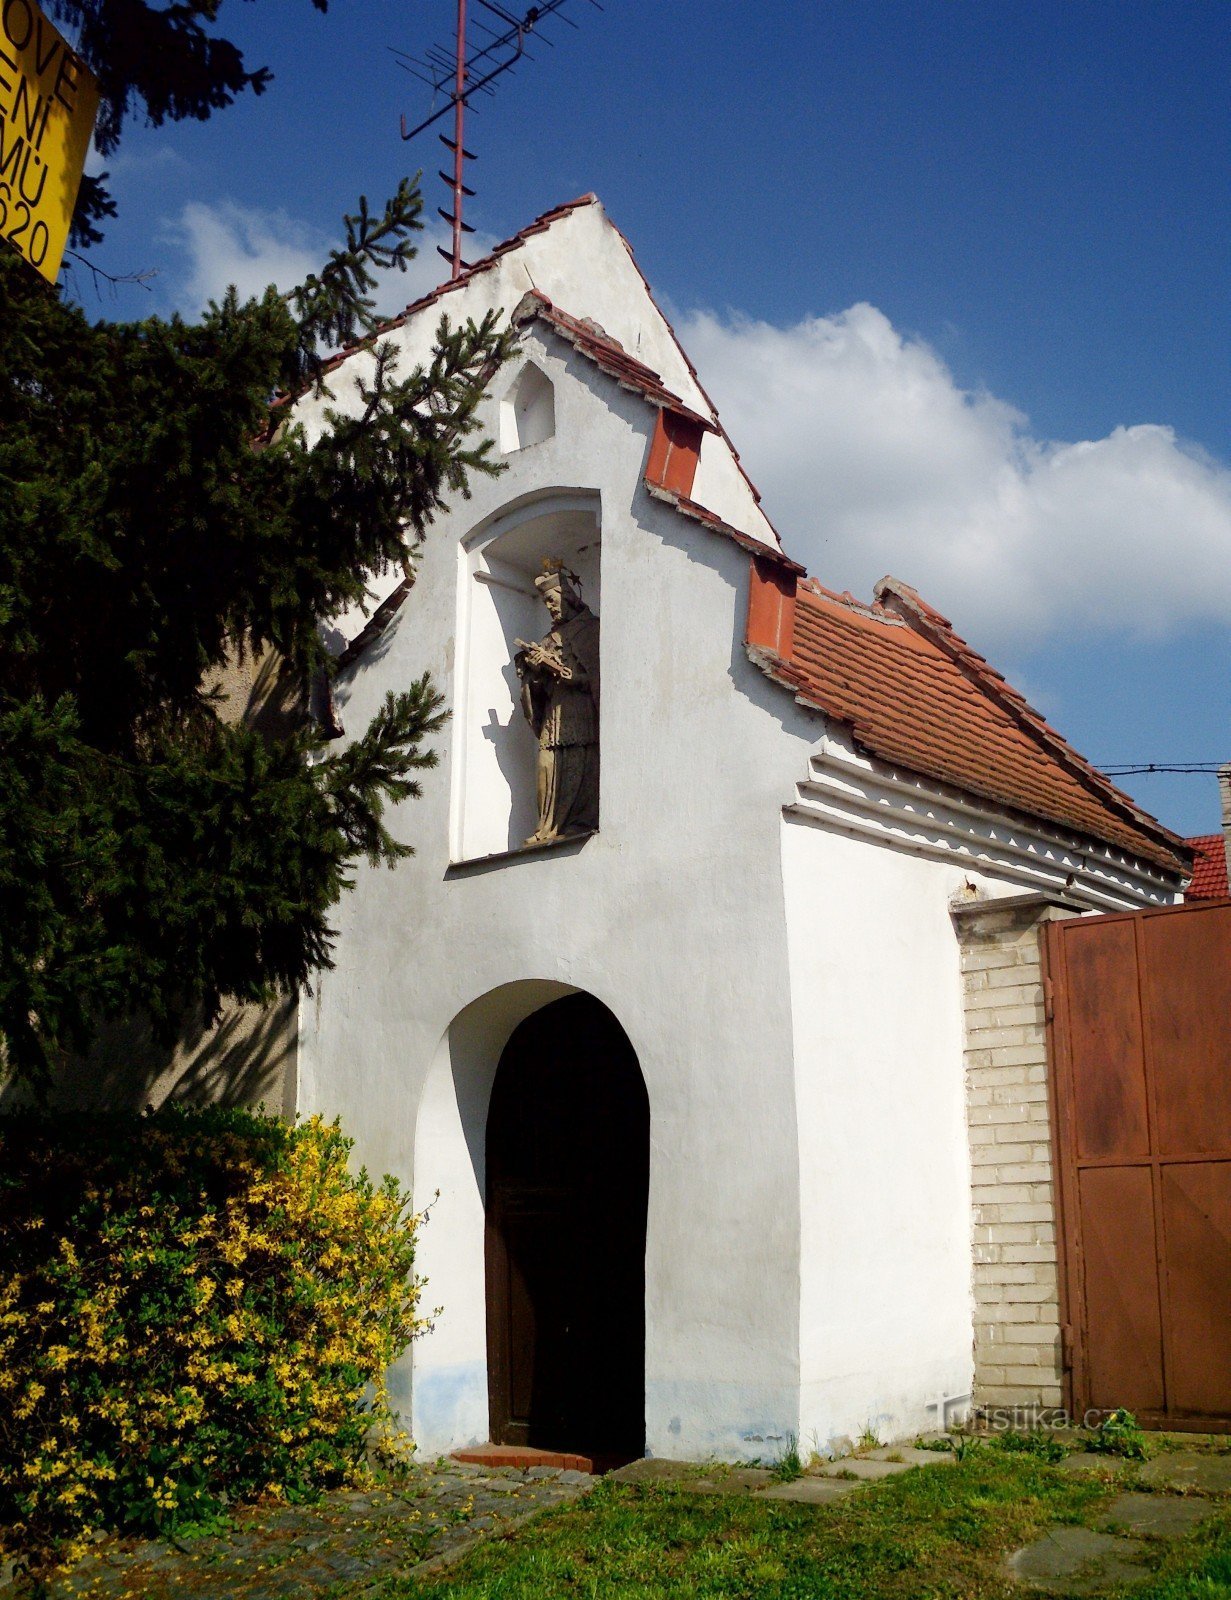 Kunovice (tại U. Hradiště) - Nhà nguyện của Đức Trinh nữ Maria